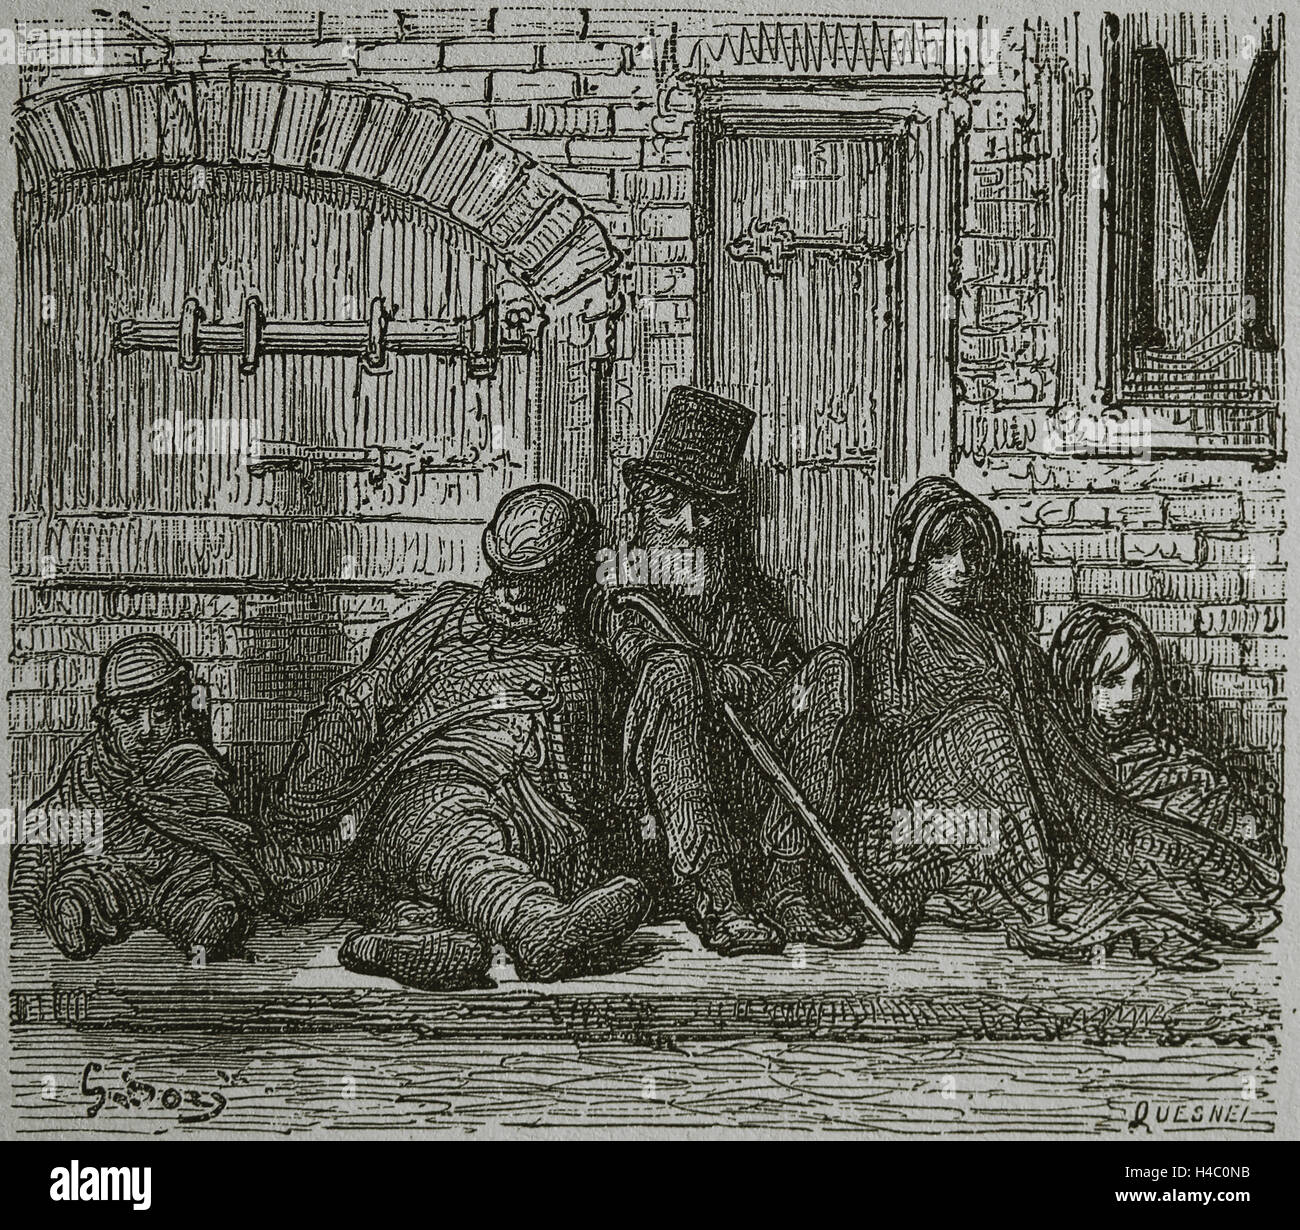 United Kingdom. Londres. Ère victorienne. Humble Industries. Les sans-abri. Gravure de Gustave Dore, 19e siècle. Banque D'Images